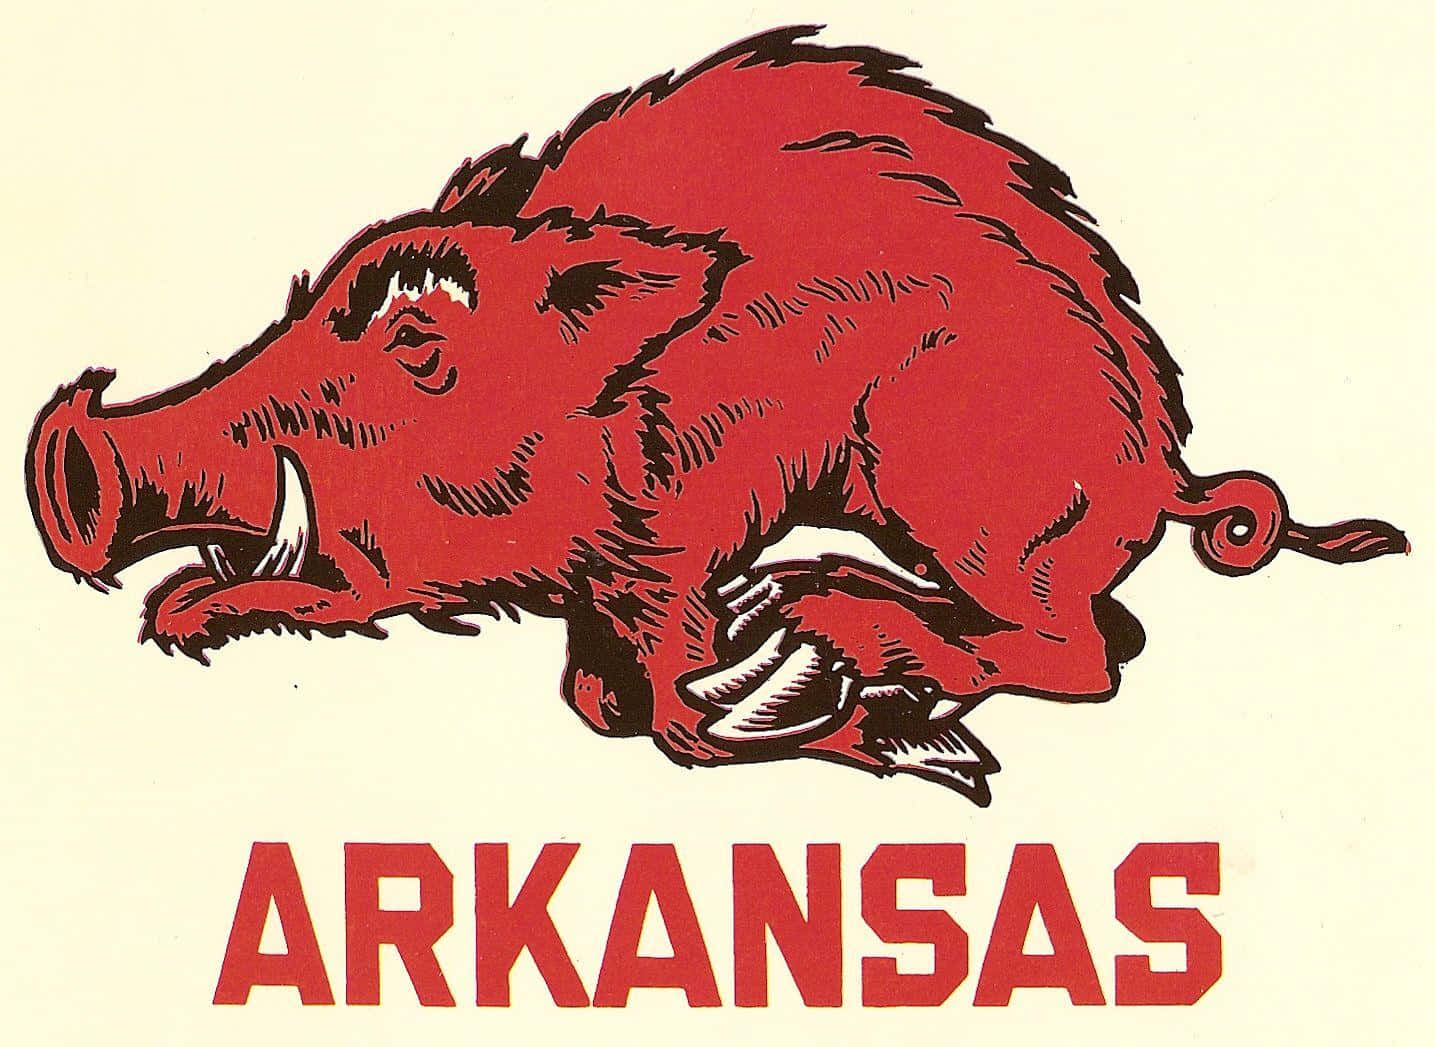 Vis din støtte til Arkansas Razorbacks! Wallpaper